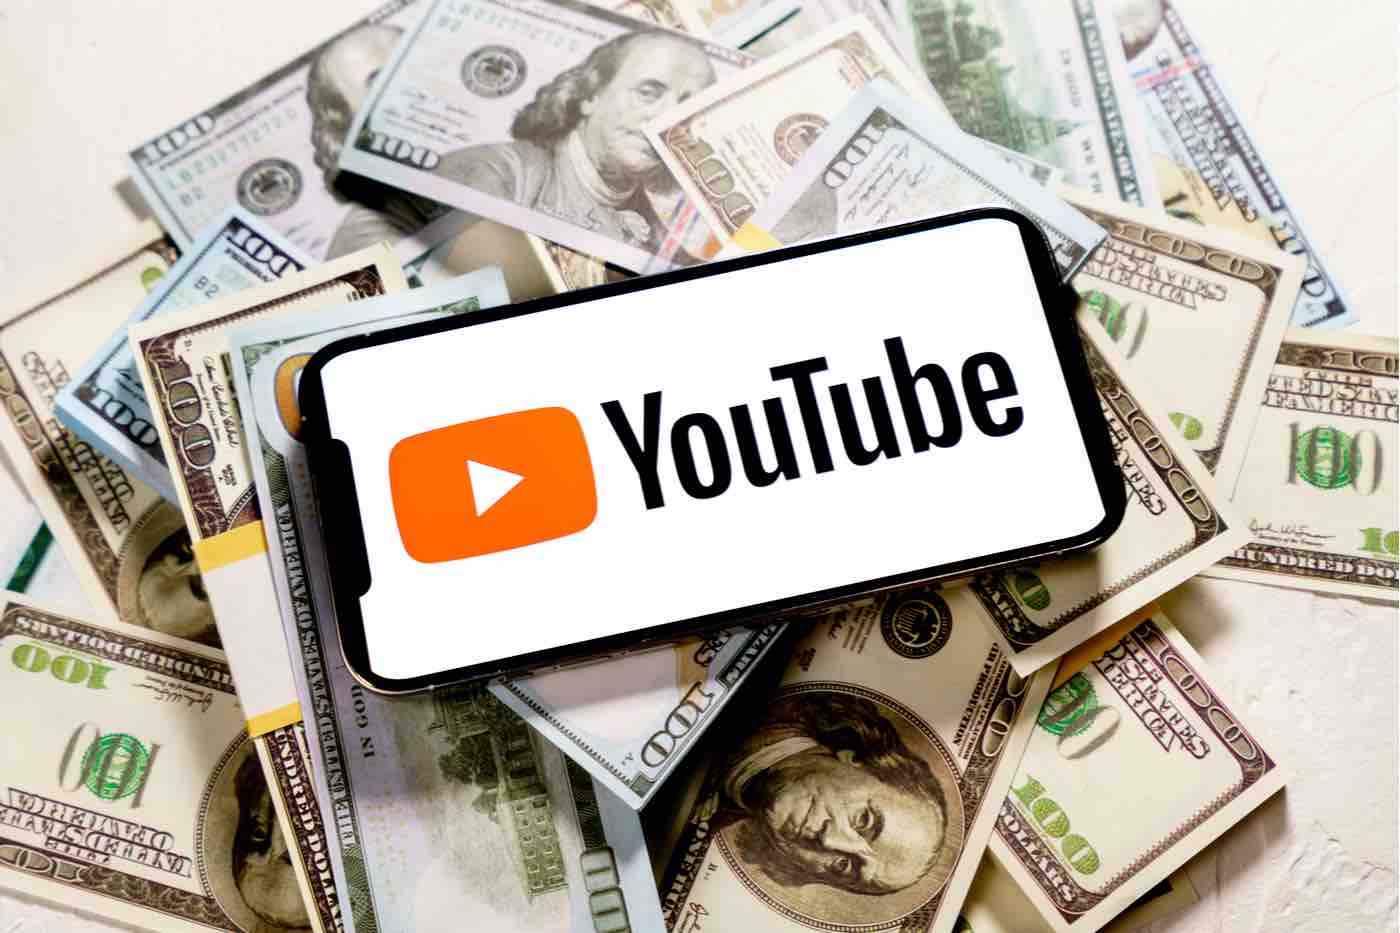 YouTube encima de dinero en efectivo